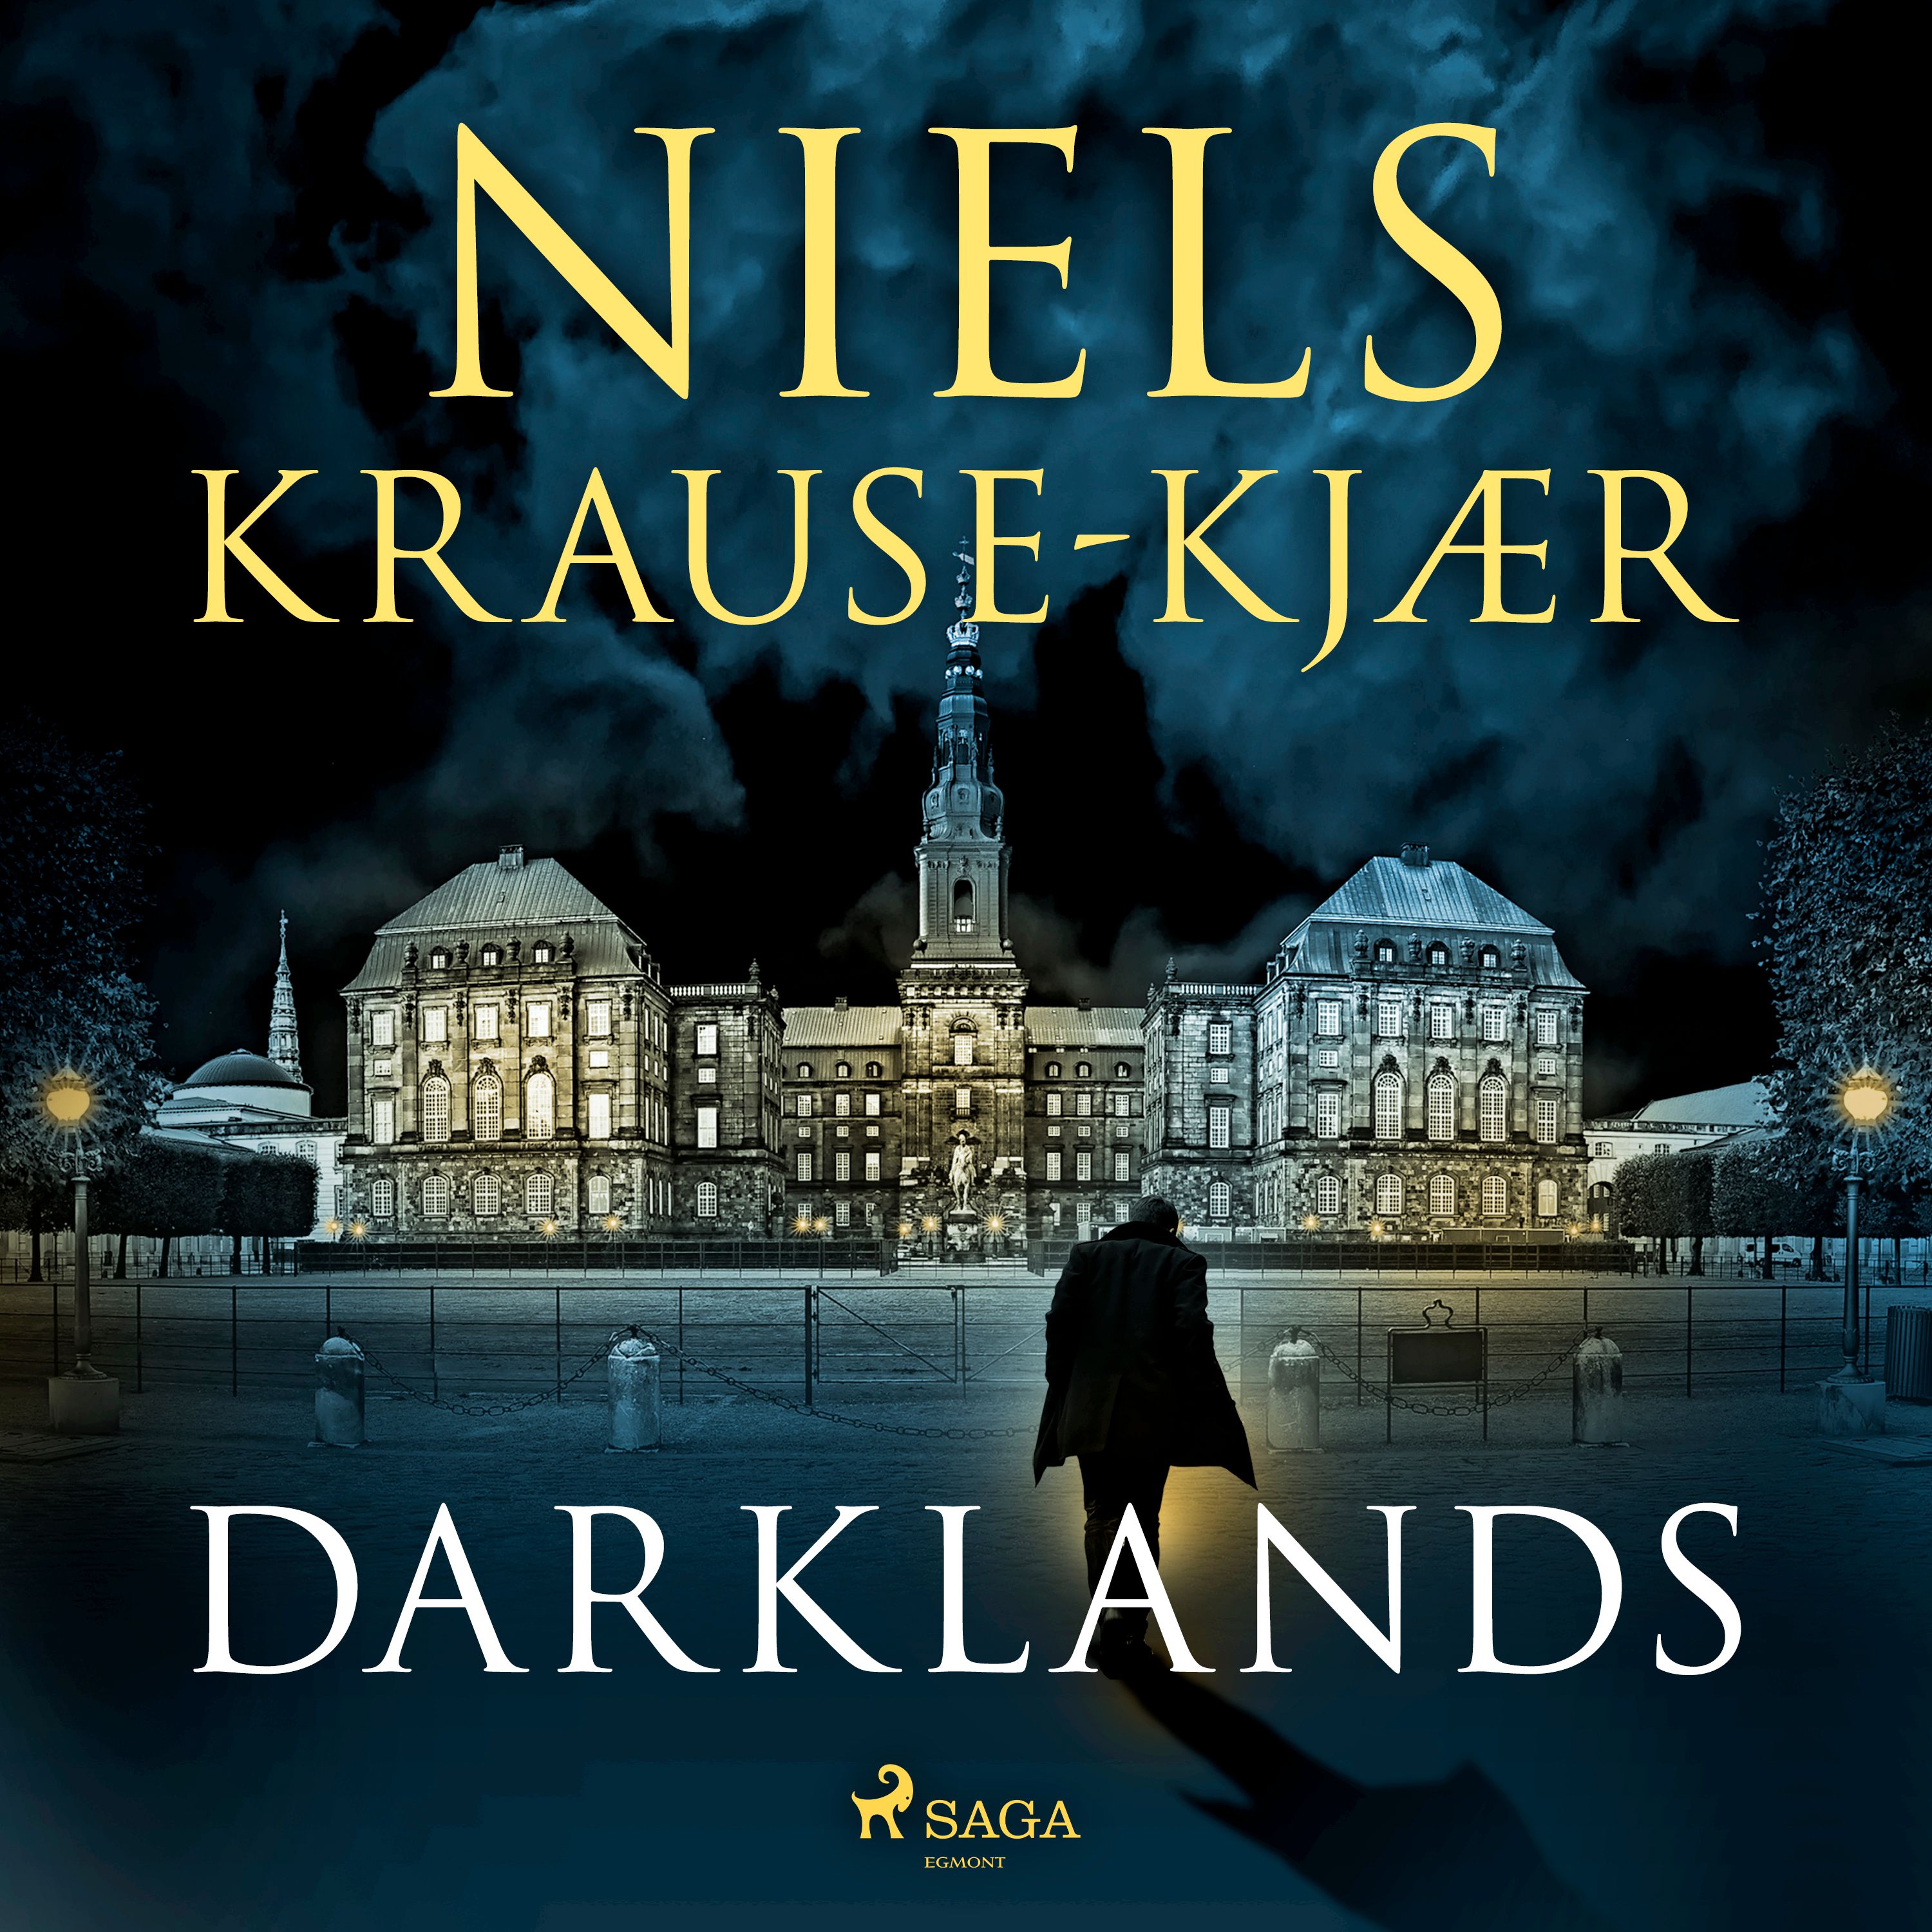 Darklands, lydbog af Niels Krause-Kjær